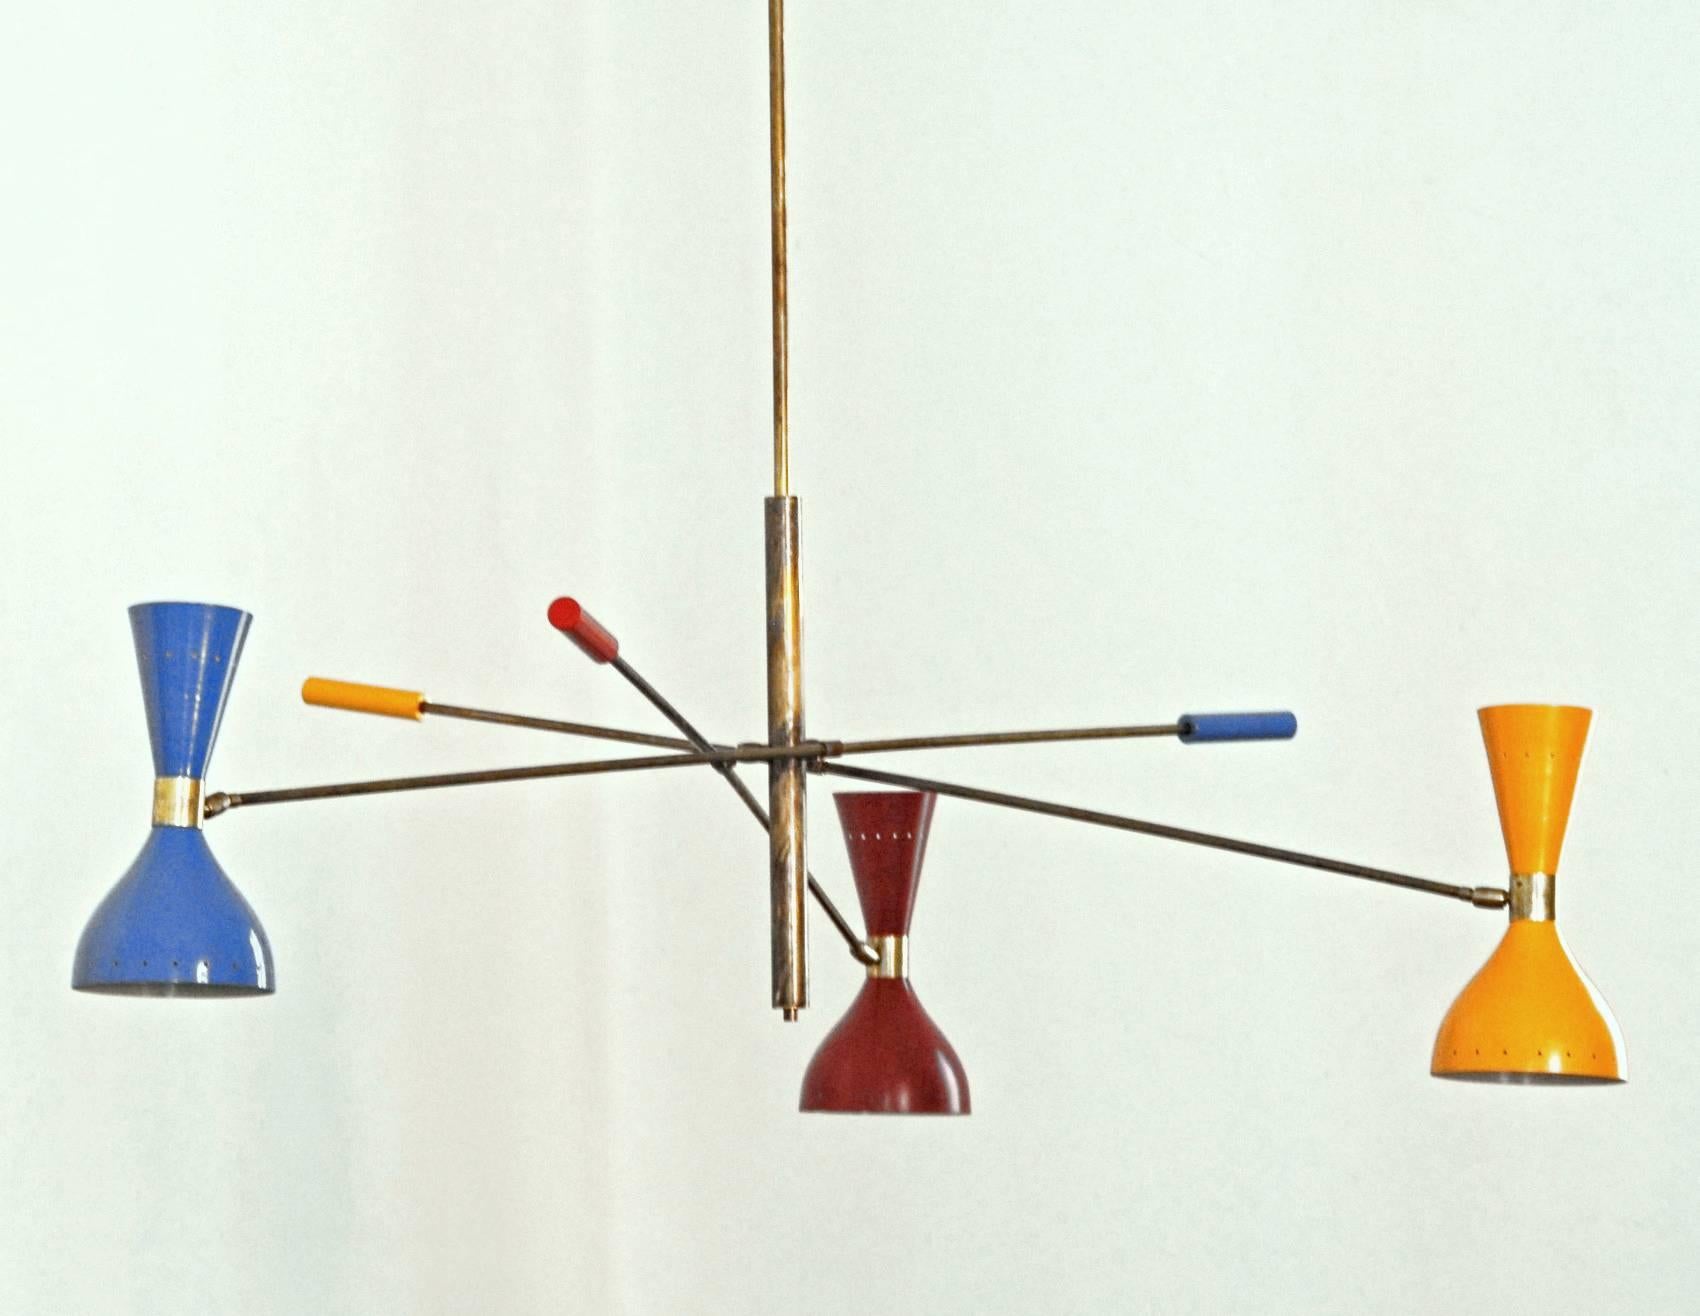 Le lustre s'inspire des luminaires emblématiques des années 1950 fabriqués par les studios italiens modernes du milieu du siècle Arteluce et Stilnovo, notamment la lampe Triennale d'Angelo Lelii. Cependant, il présente un design unique et distinctif